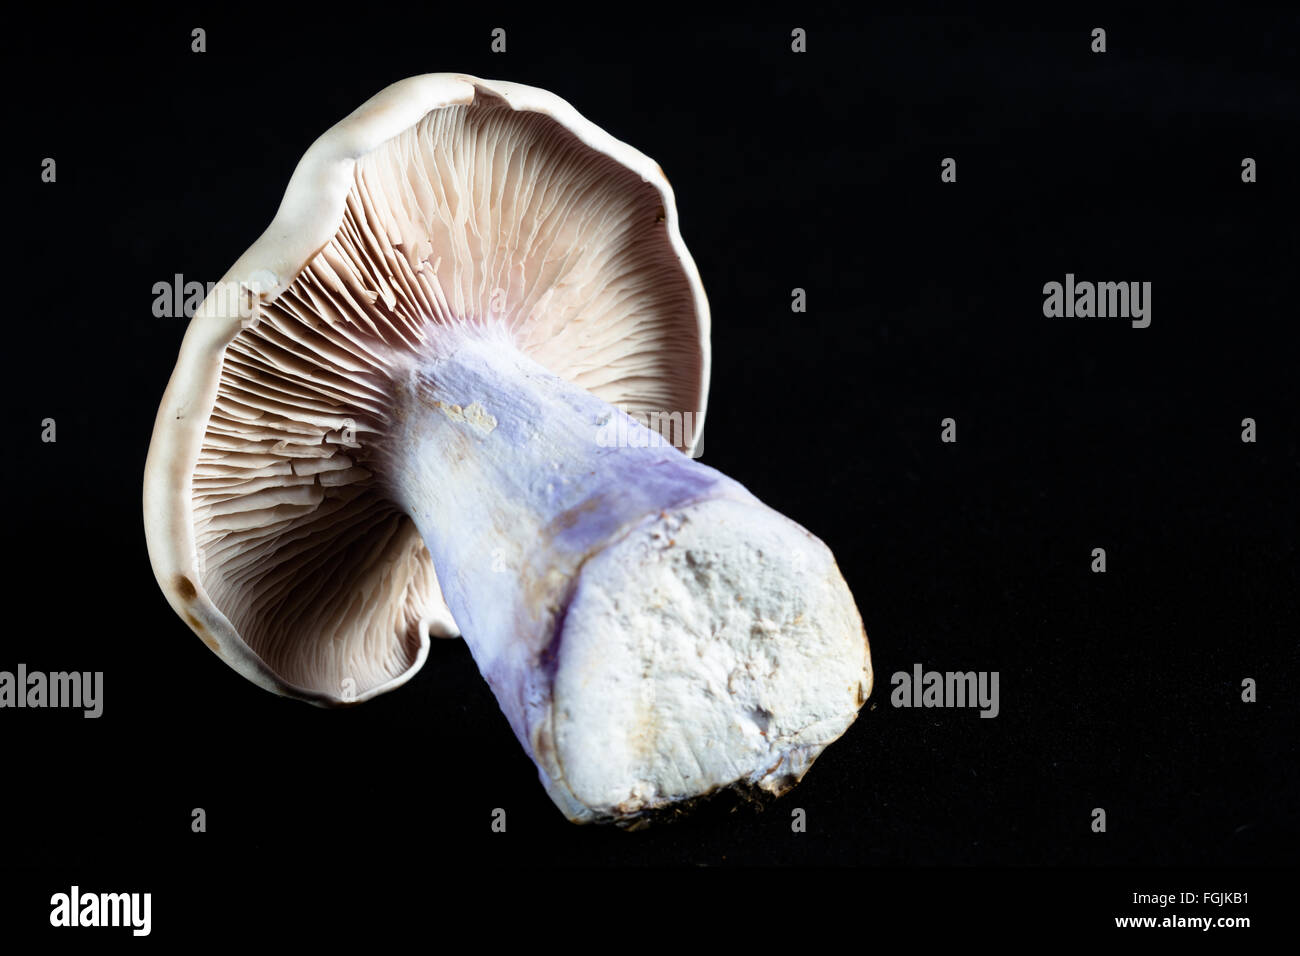 Una macro immagine della stipe, branchie e lo stelo di un re tromba fungo/funghi (Pleurotus eryngii) Foto Stock